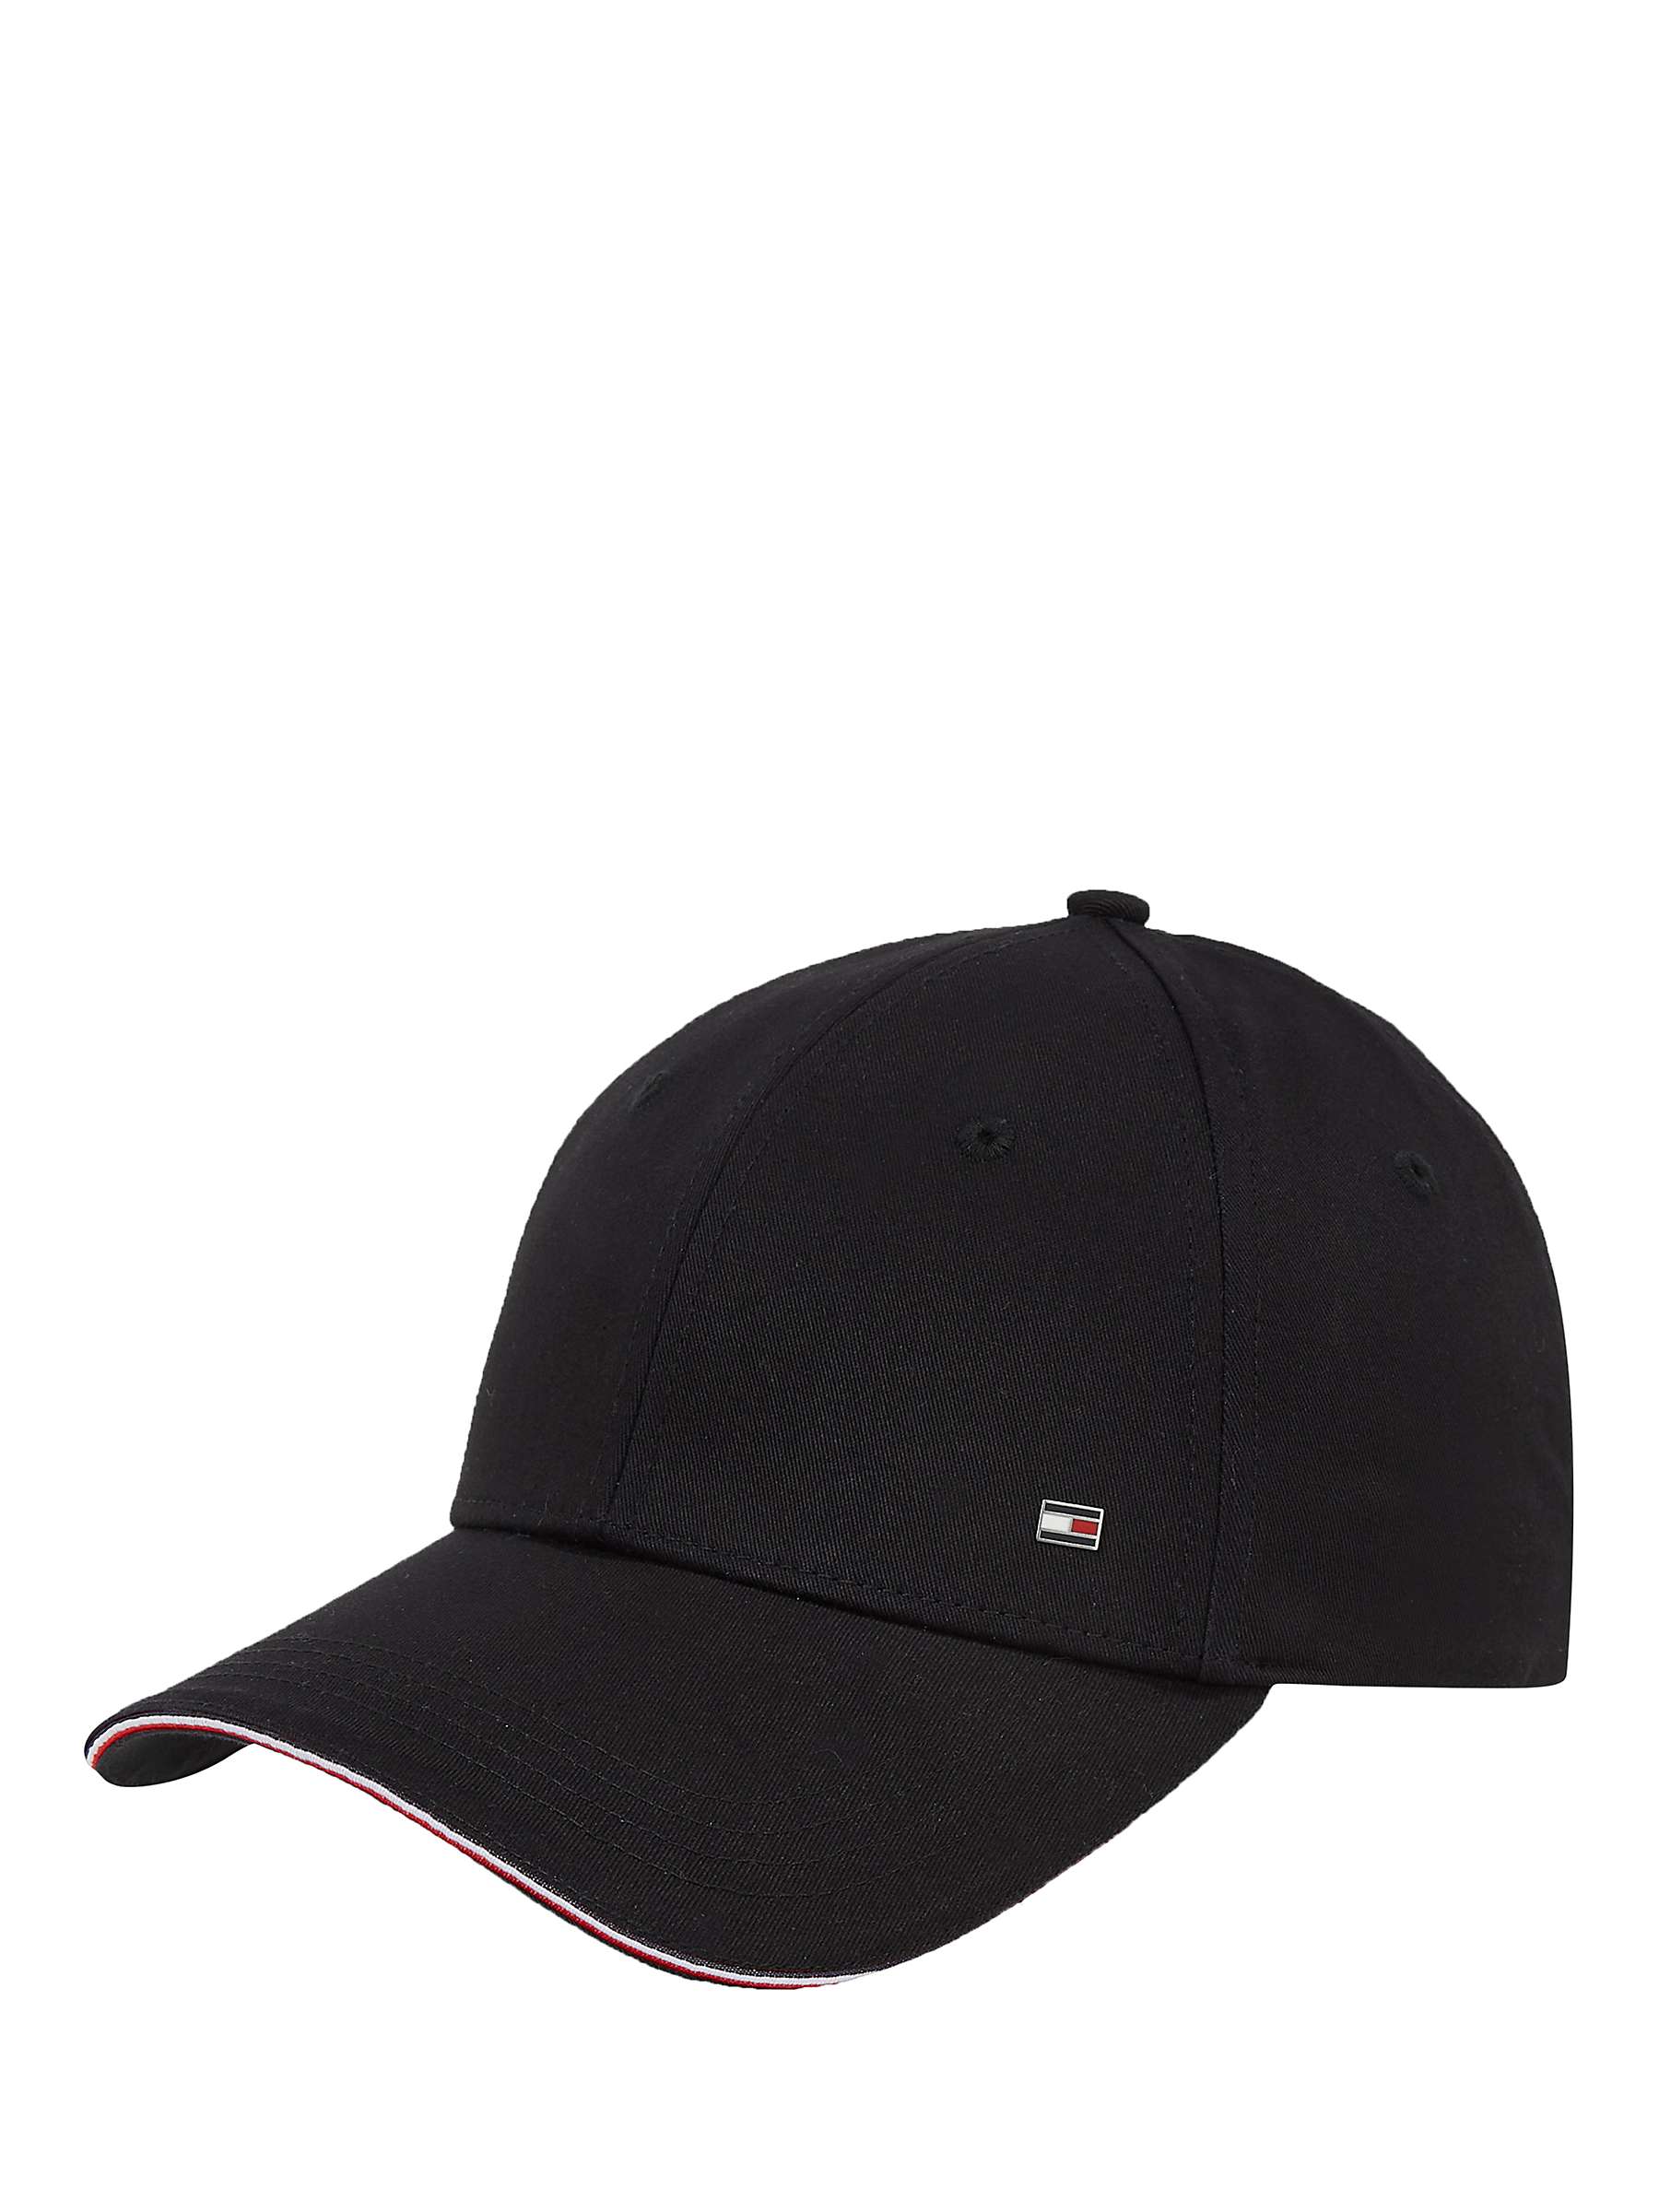 Buy Tommy Hilfiger Plain Logo Hat Online at johnlewis.com